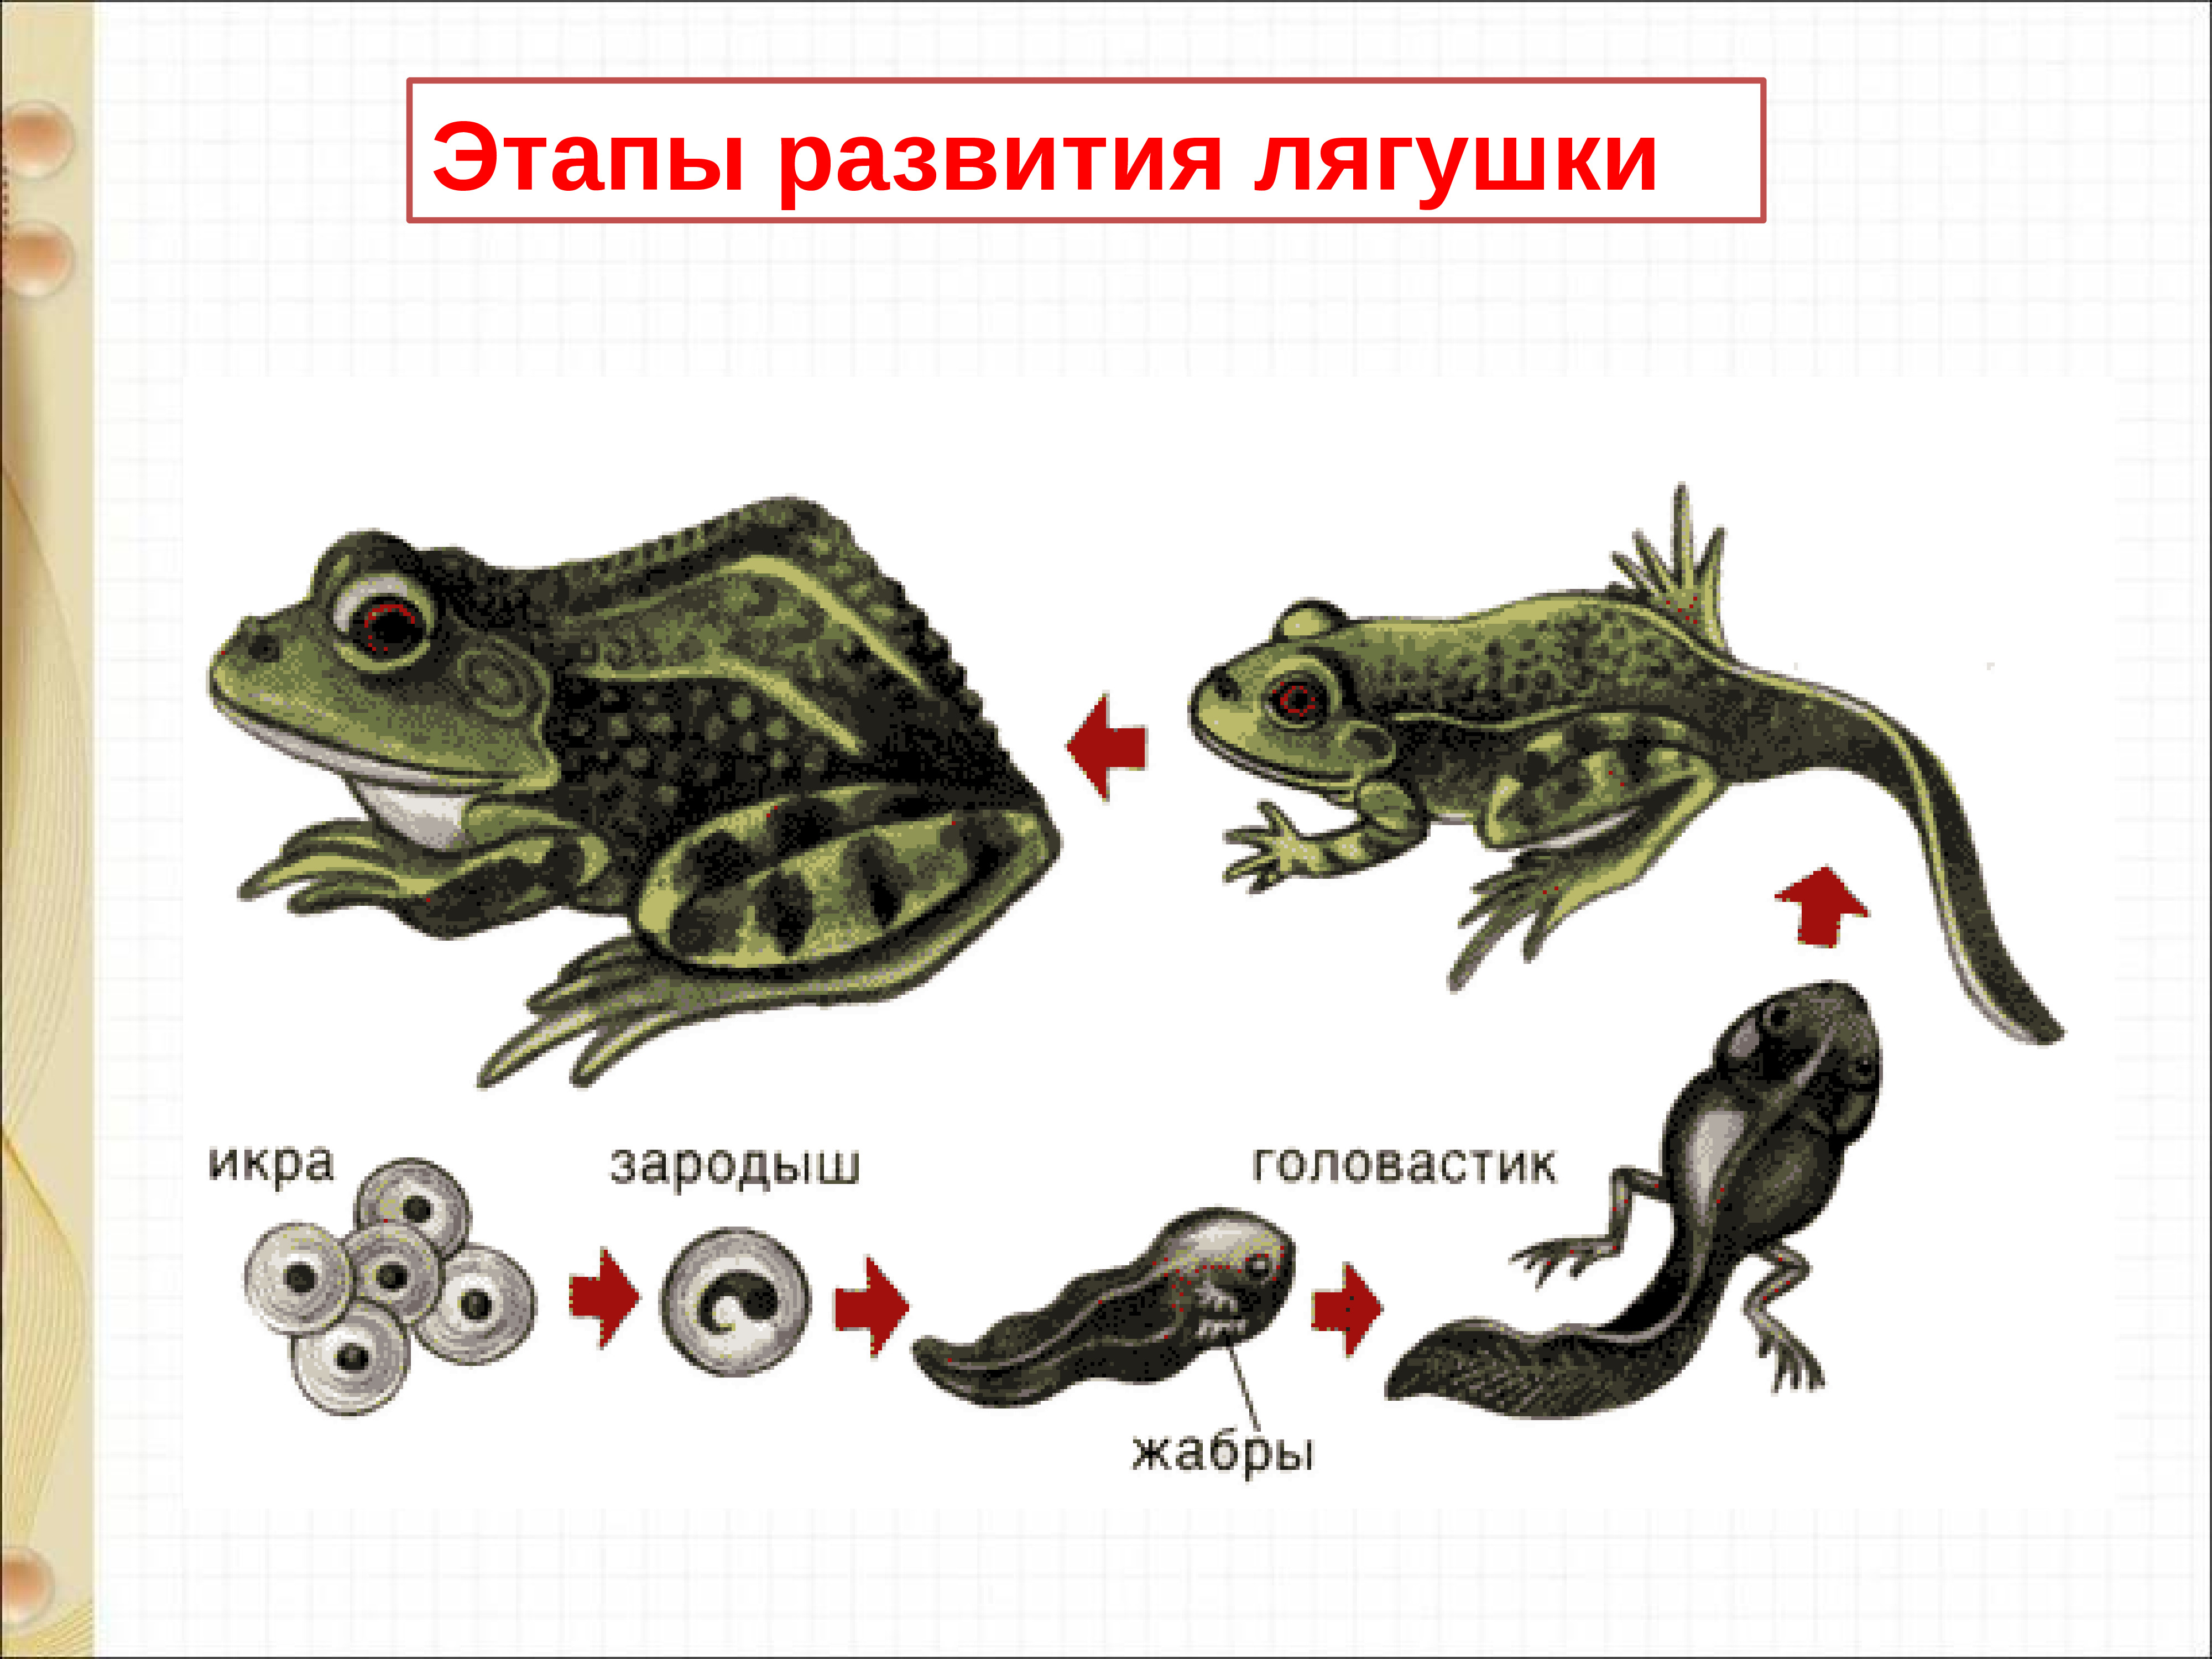 Эволюция лягушки из головастика